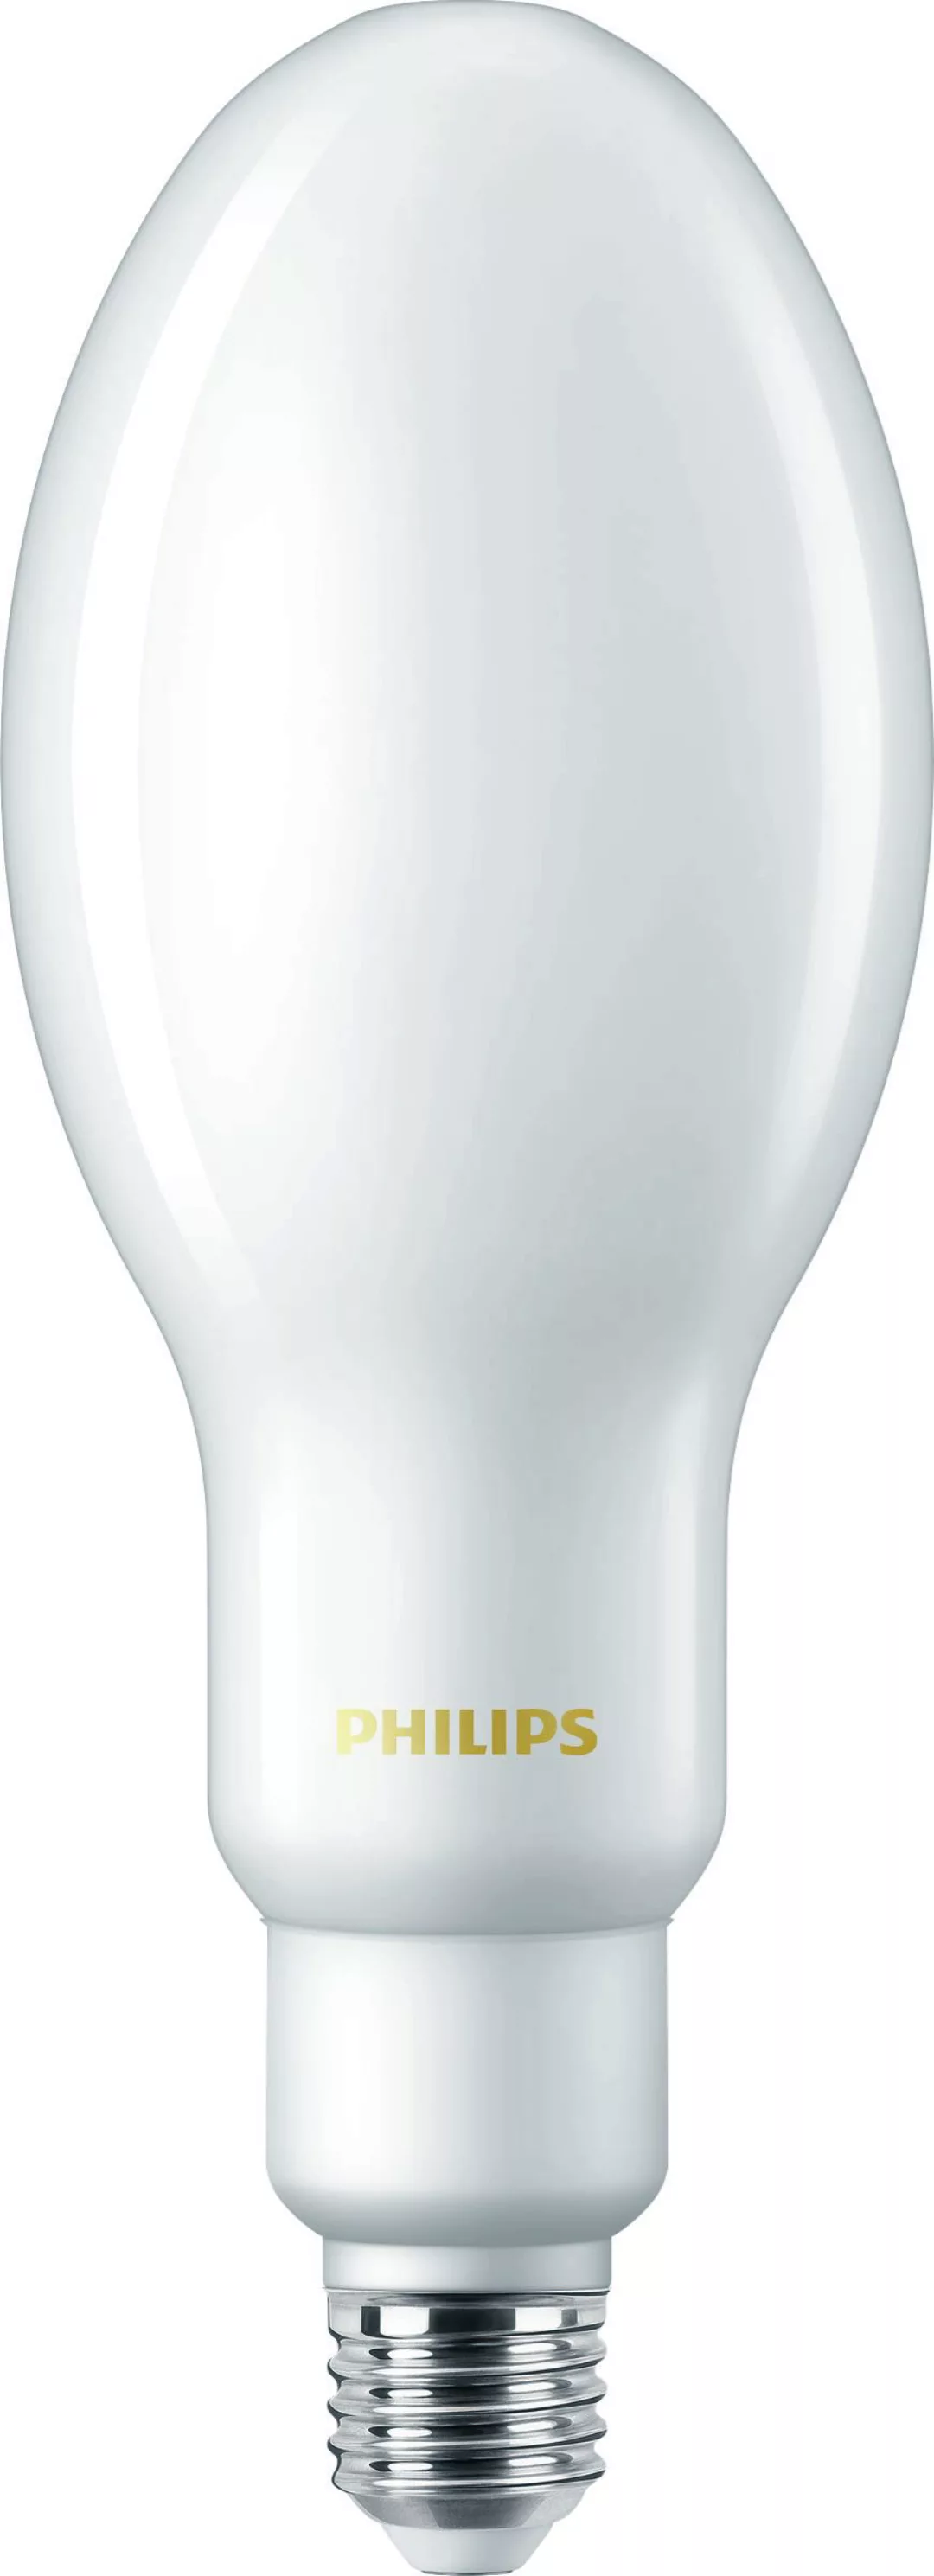 Philips Lighting LED-Lampe E27 3000K TForce Cor #75033600 günstig online kaufen